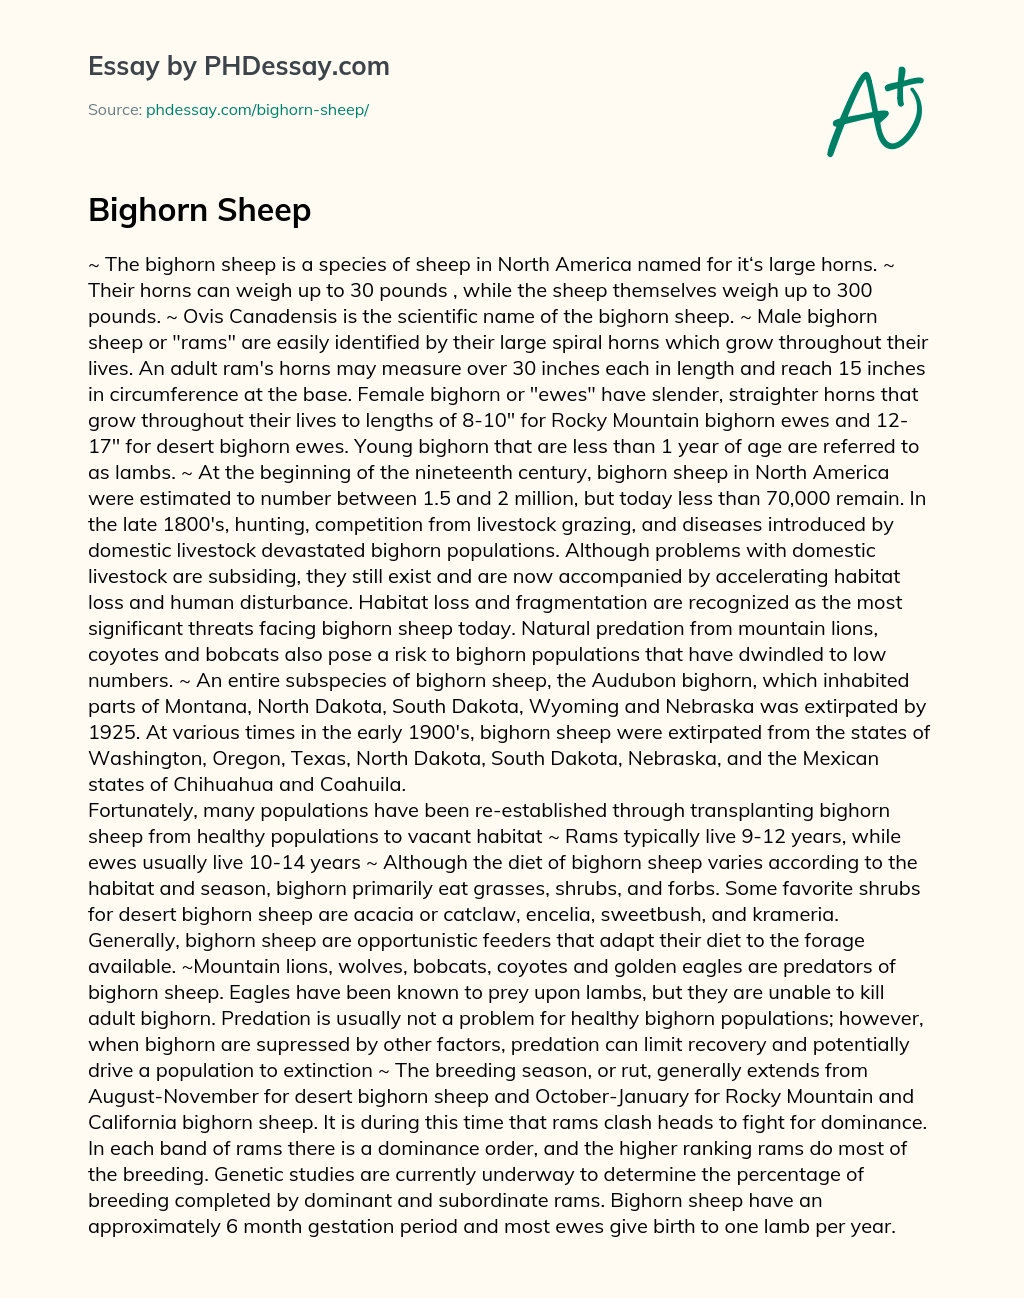 Bighorn Sheep essay